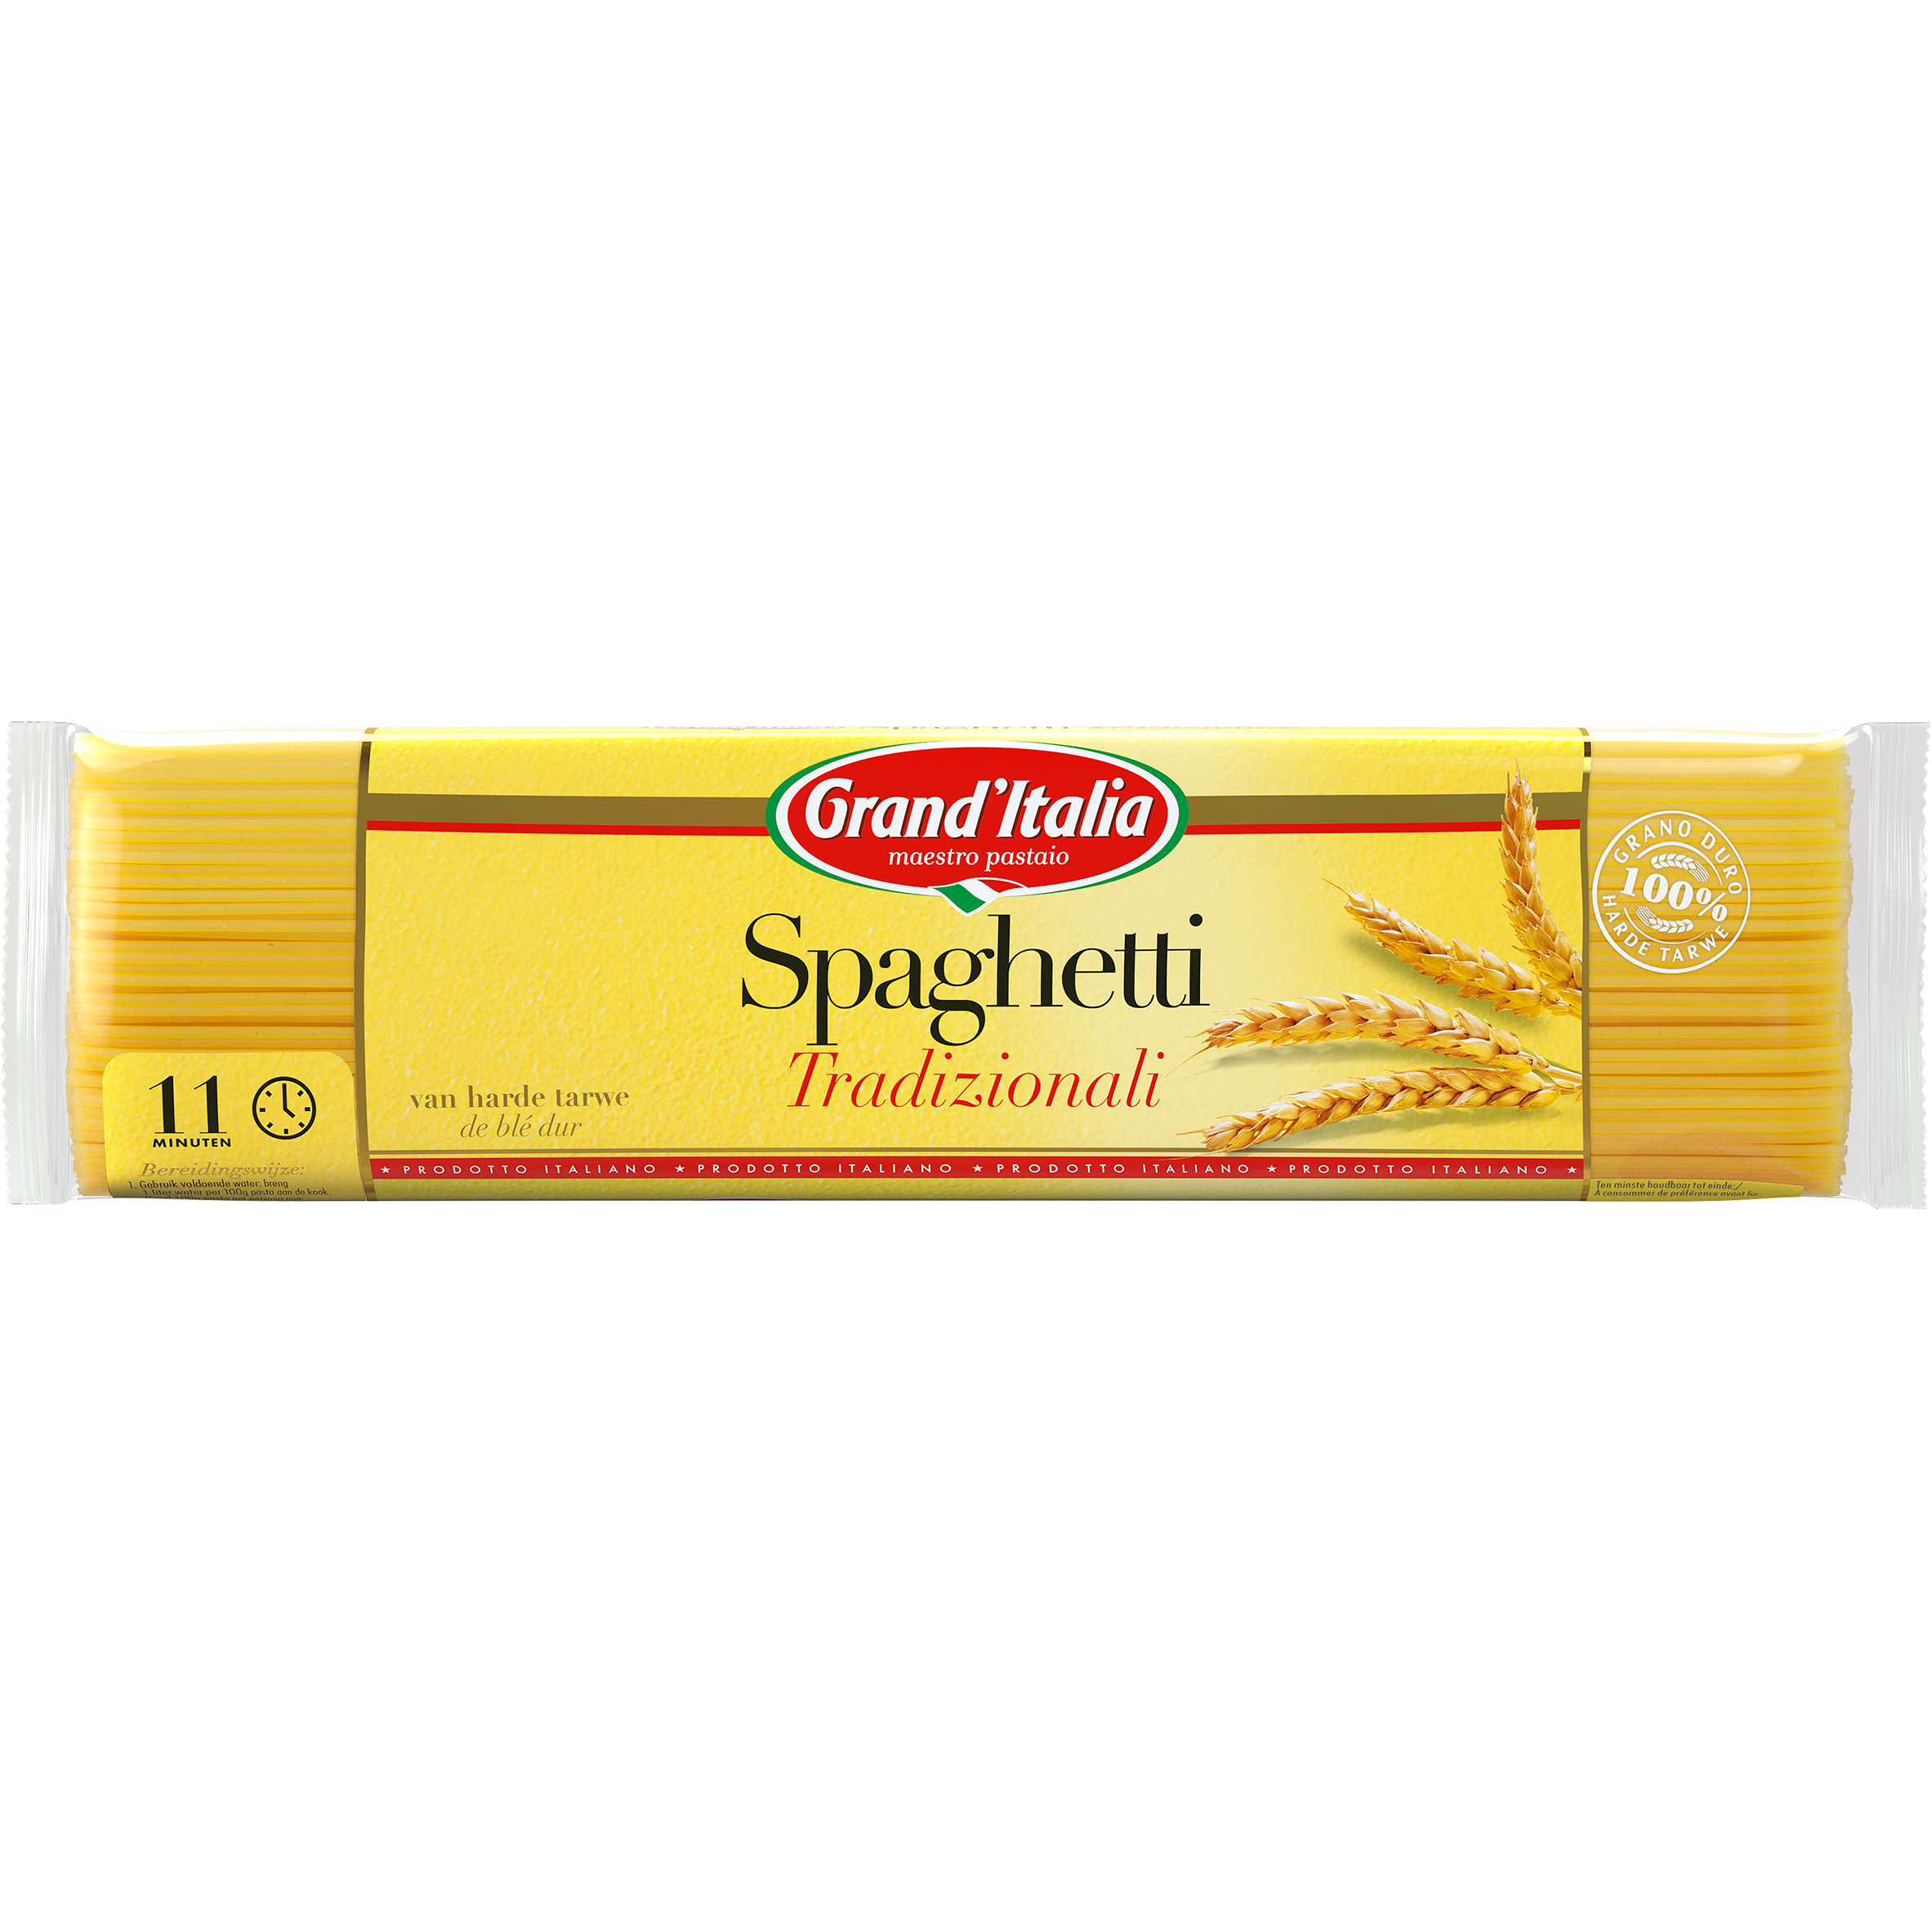 Pasta Spaghetti Tradizionali 500g Grand'Italia